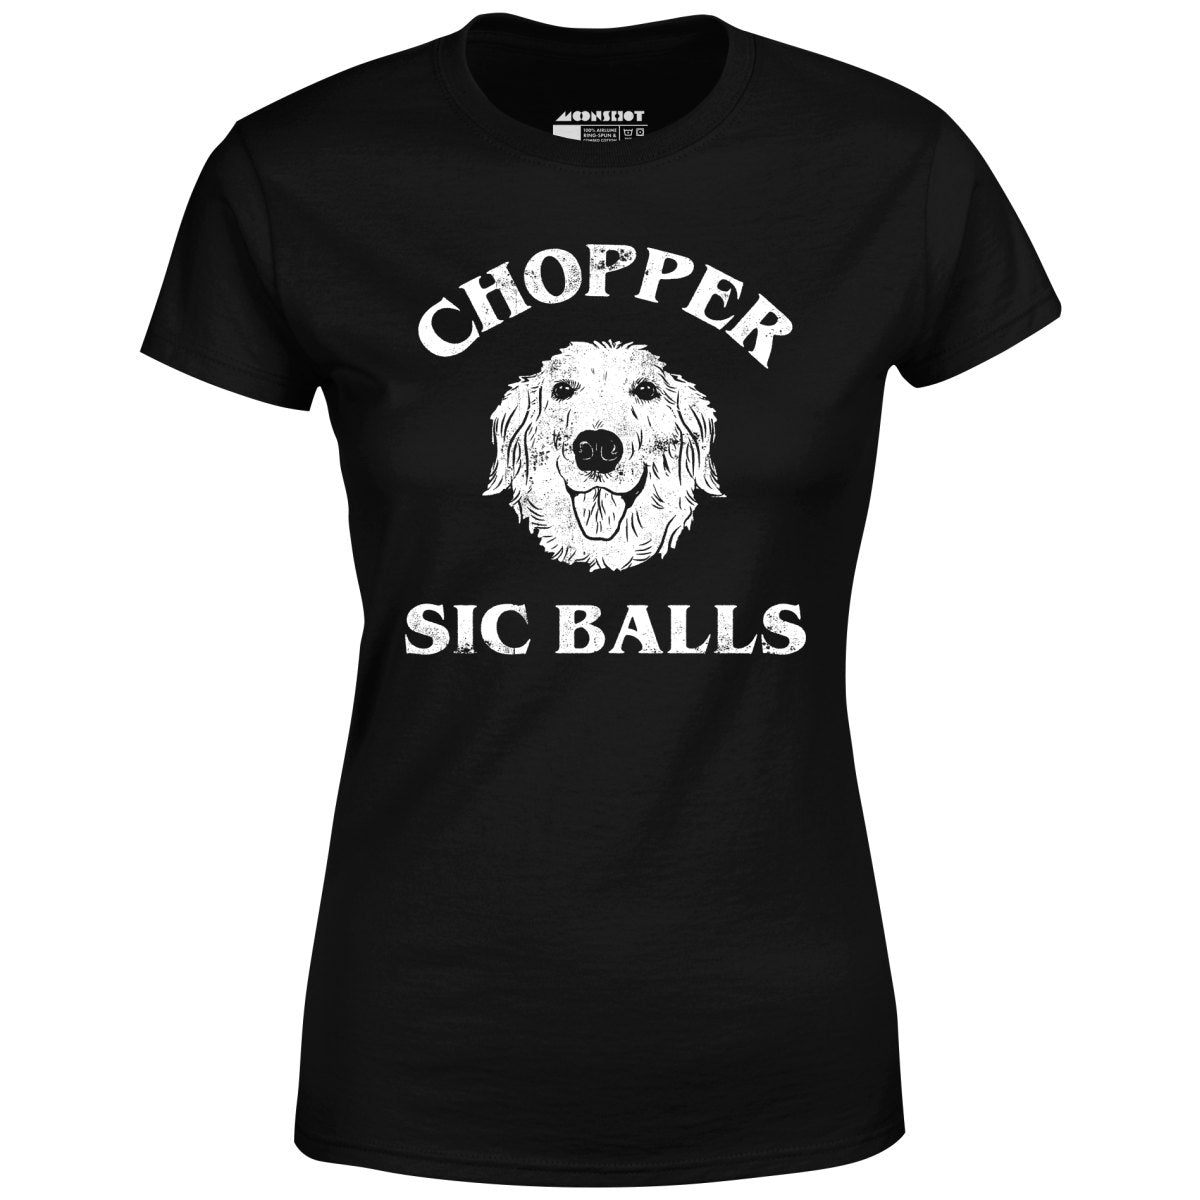 Chopper Sic Balls - Women's T-Shirt